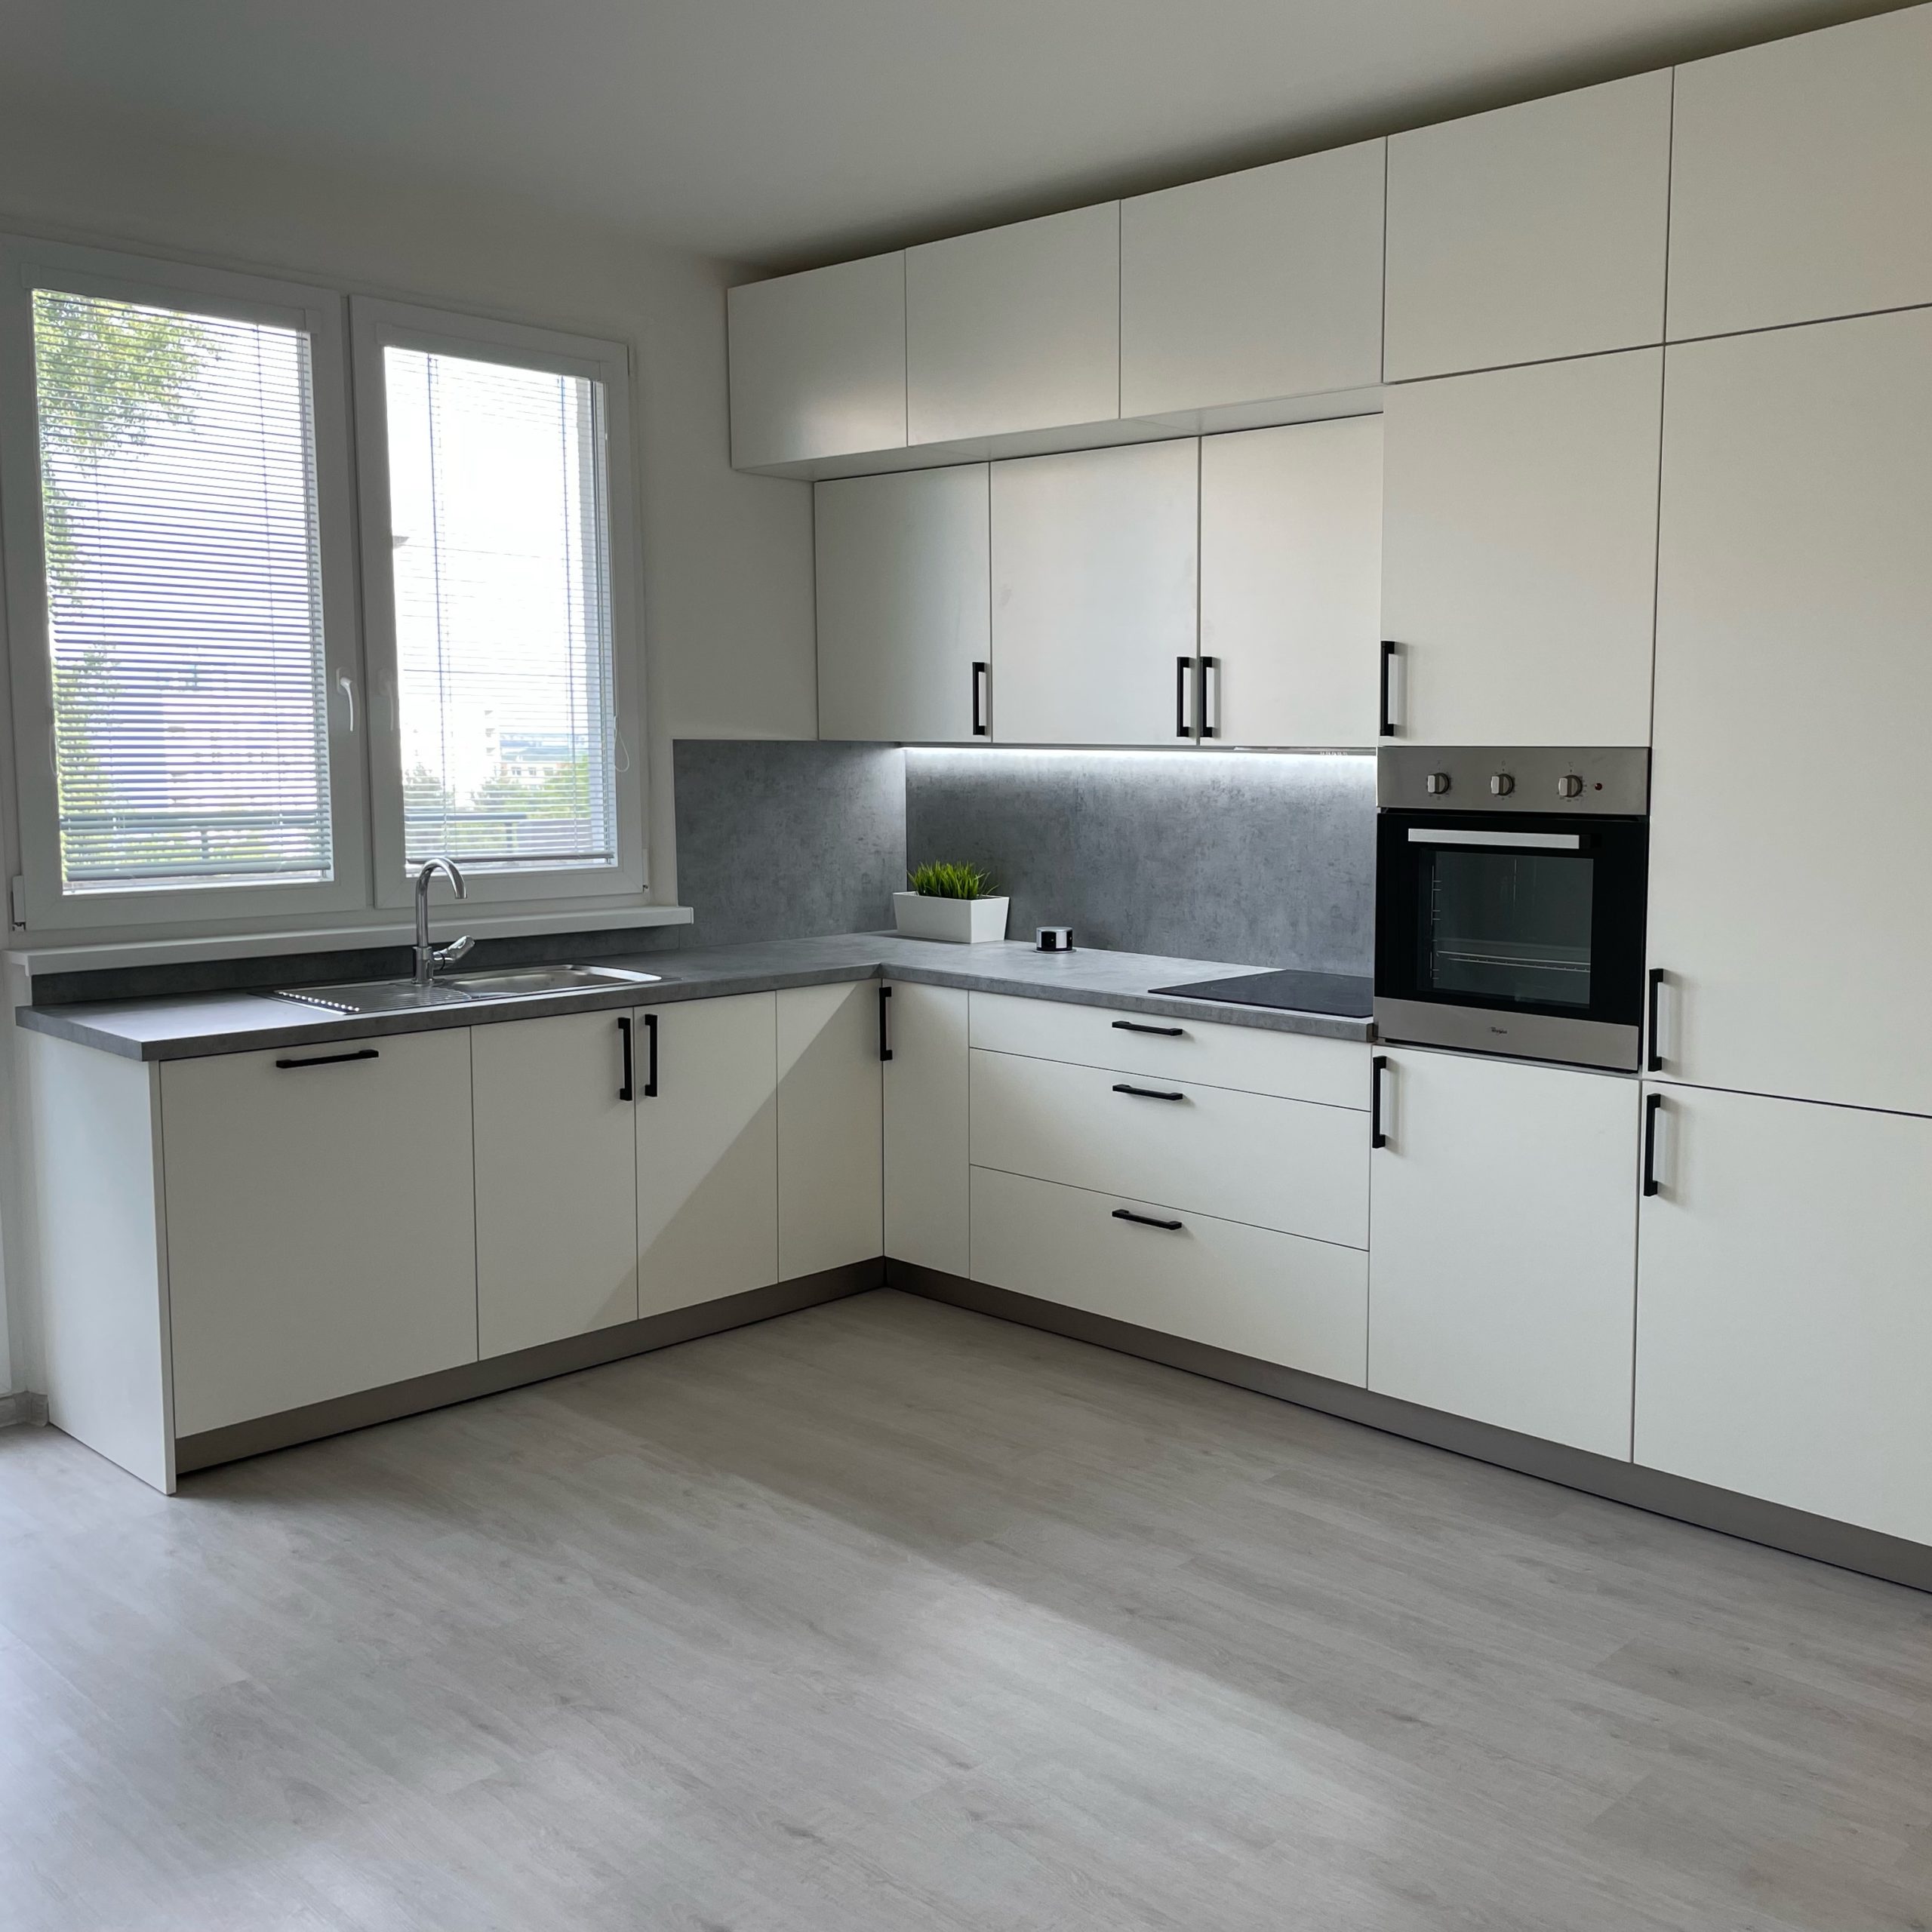 Moderná a minimalistická, taká je naša najnovšia realizácia kuchynskej linky v 4. izbovom byte u klienta v Bratislave.